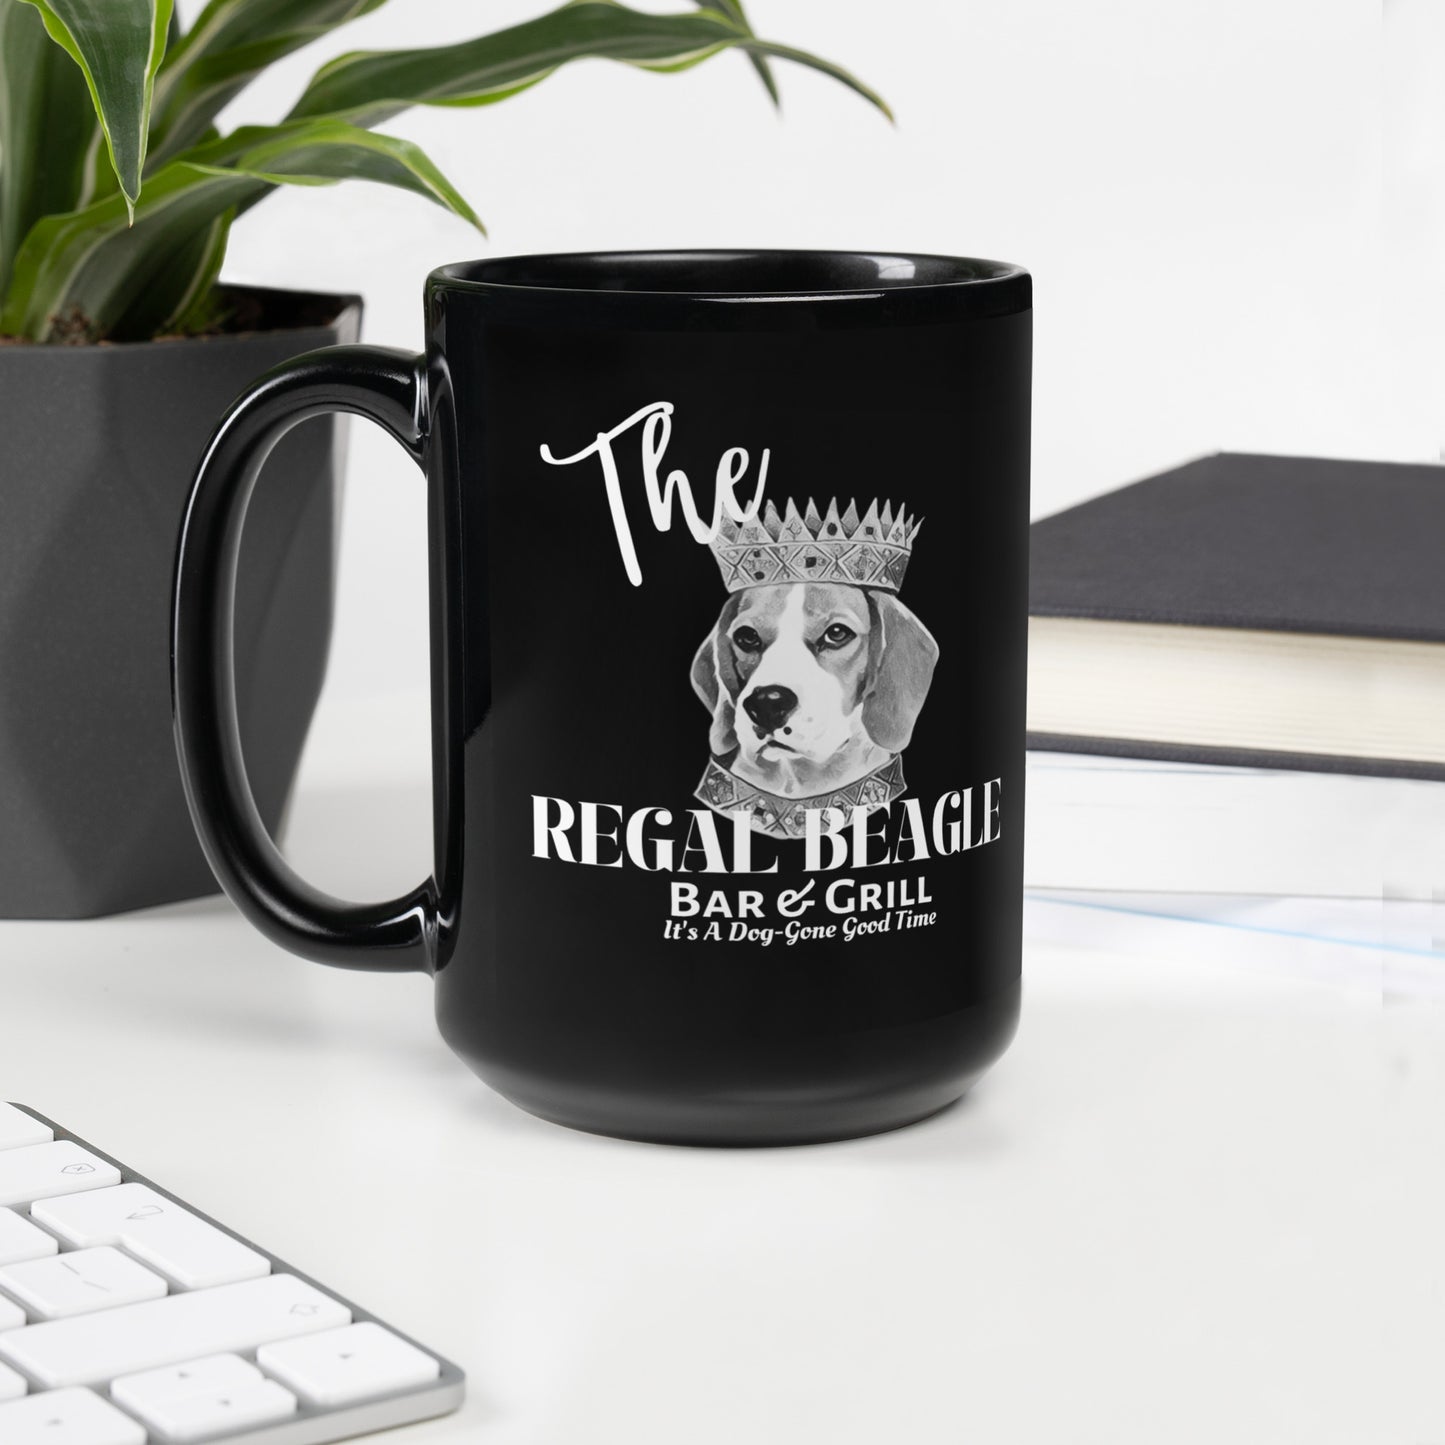 The Regal Beagle Coffee Mug